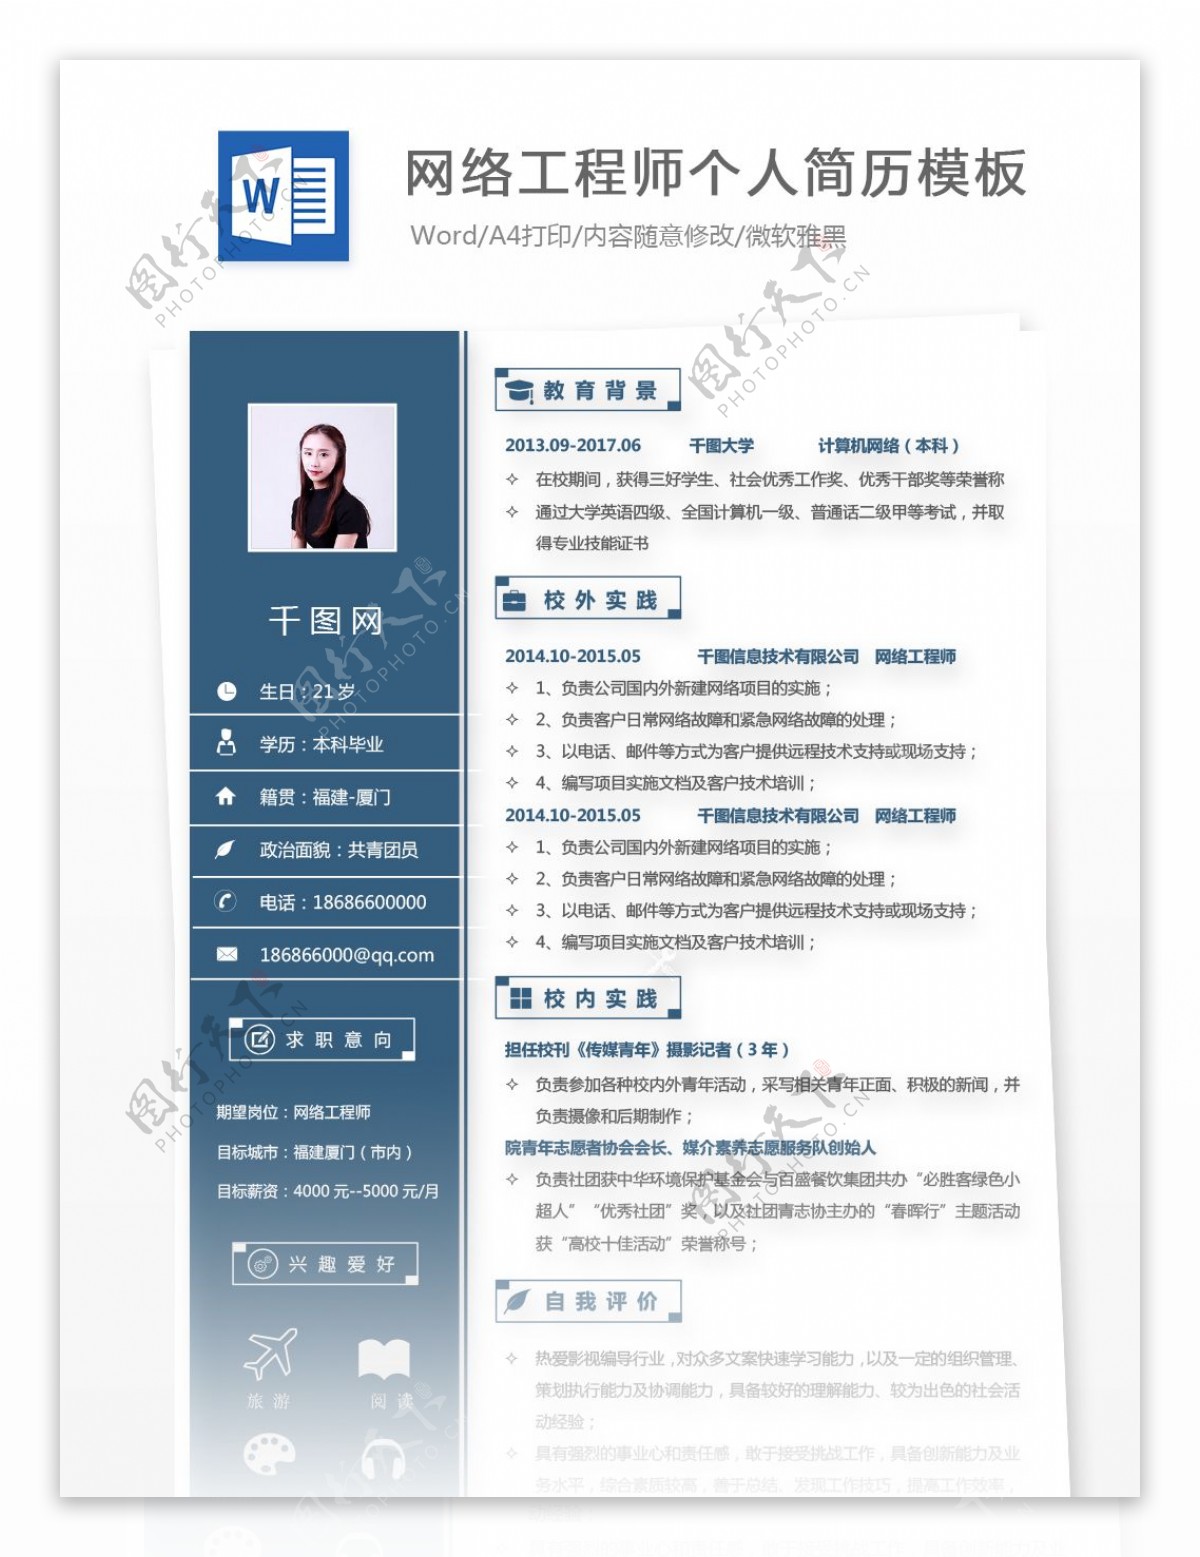 刘佳乐网络工程师个人简历模板